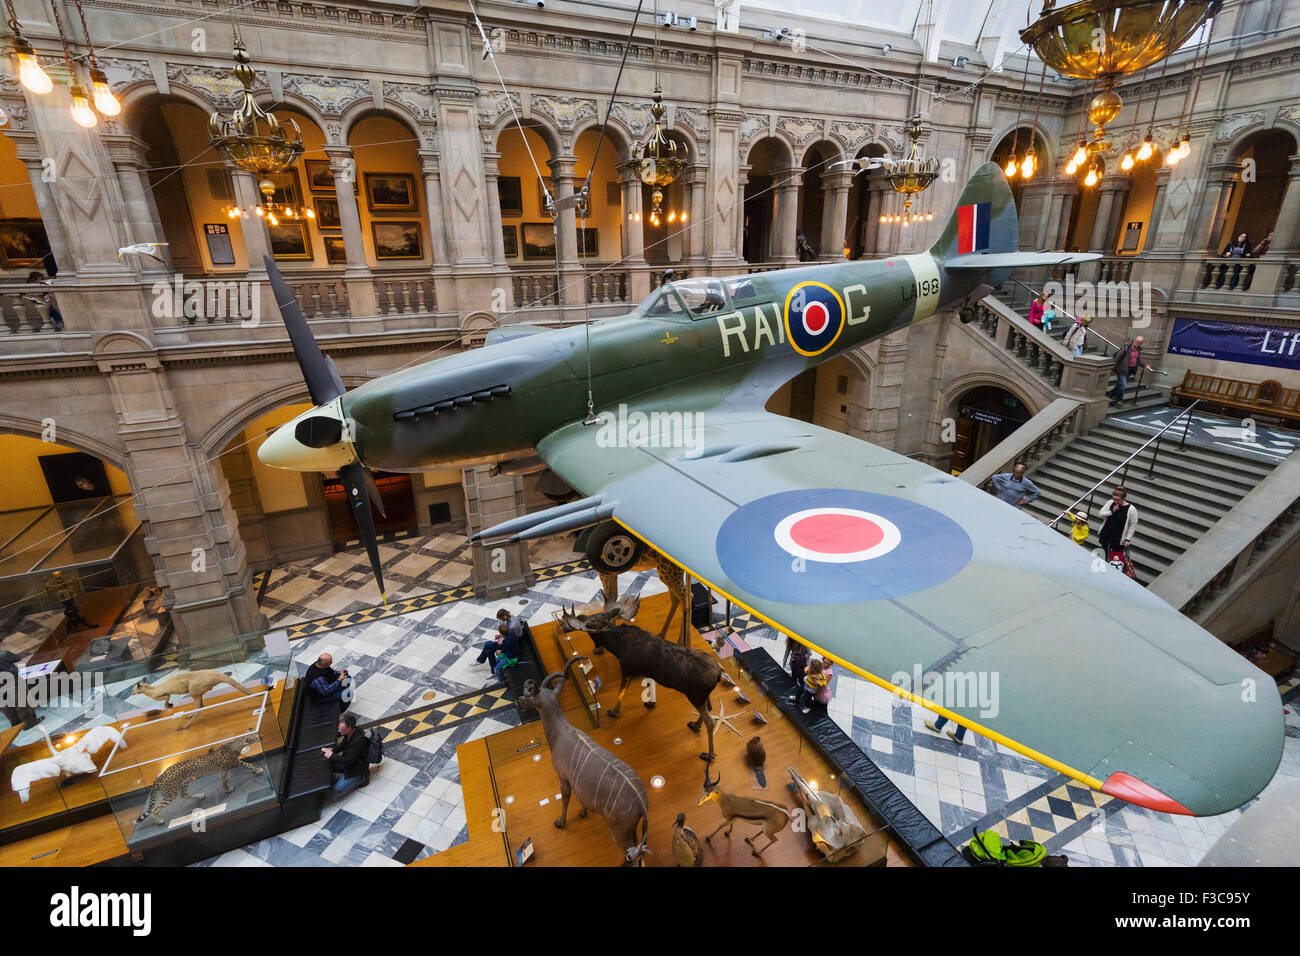 Chasseur Spitfire en exposition à Kelvingrove Art Gallery and Museum de Glasgow Royaume-Uni Banque D'Images